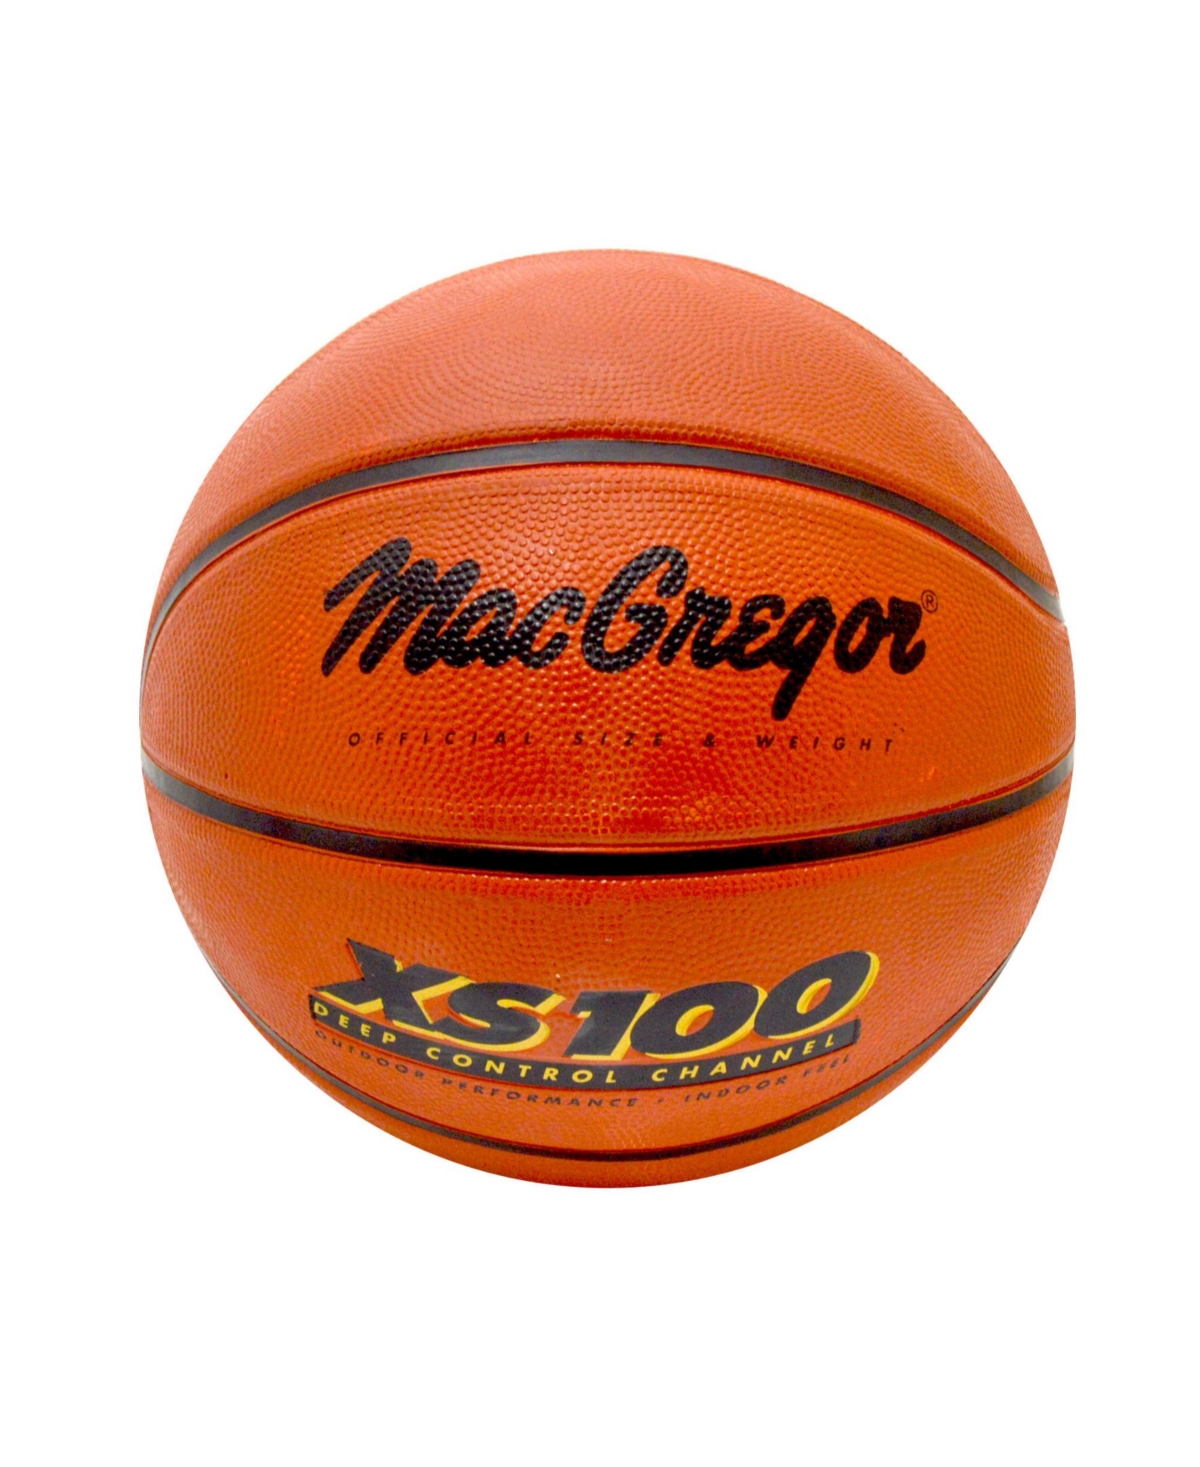 Hedstrom - Macgregor Xs-100 Size 7 Rubber Basketball In Orange